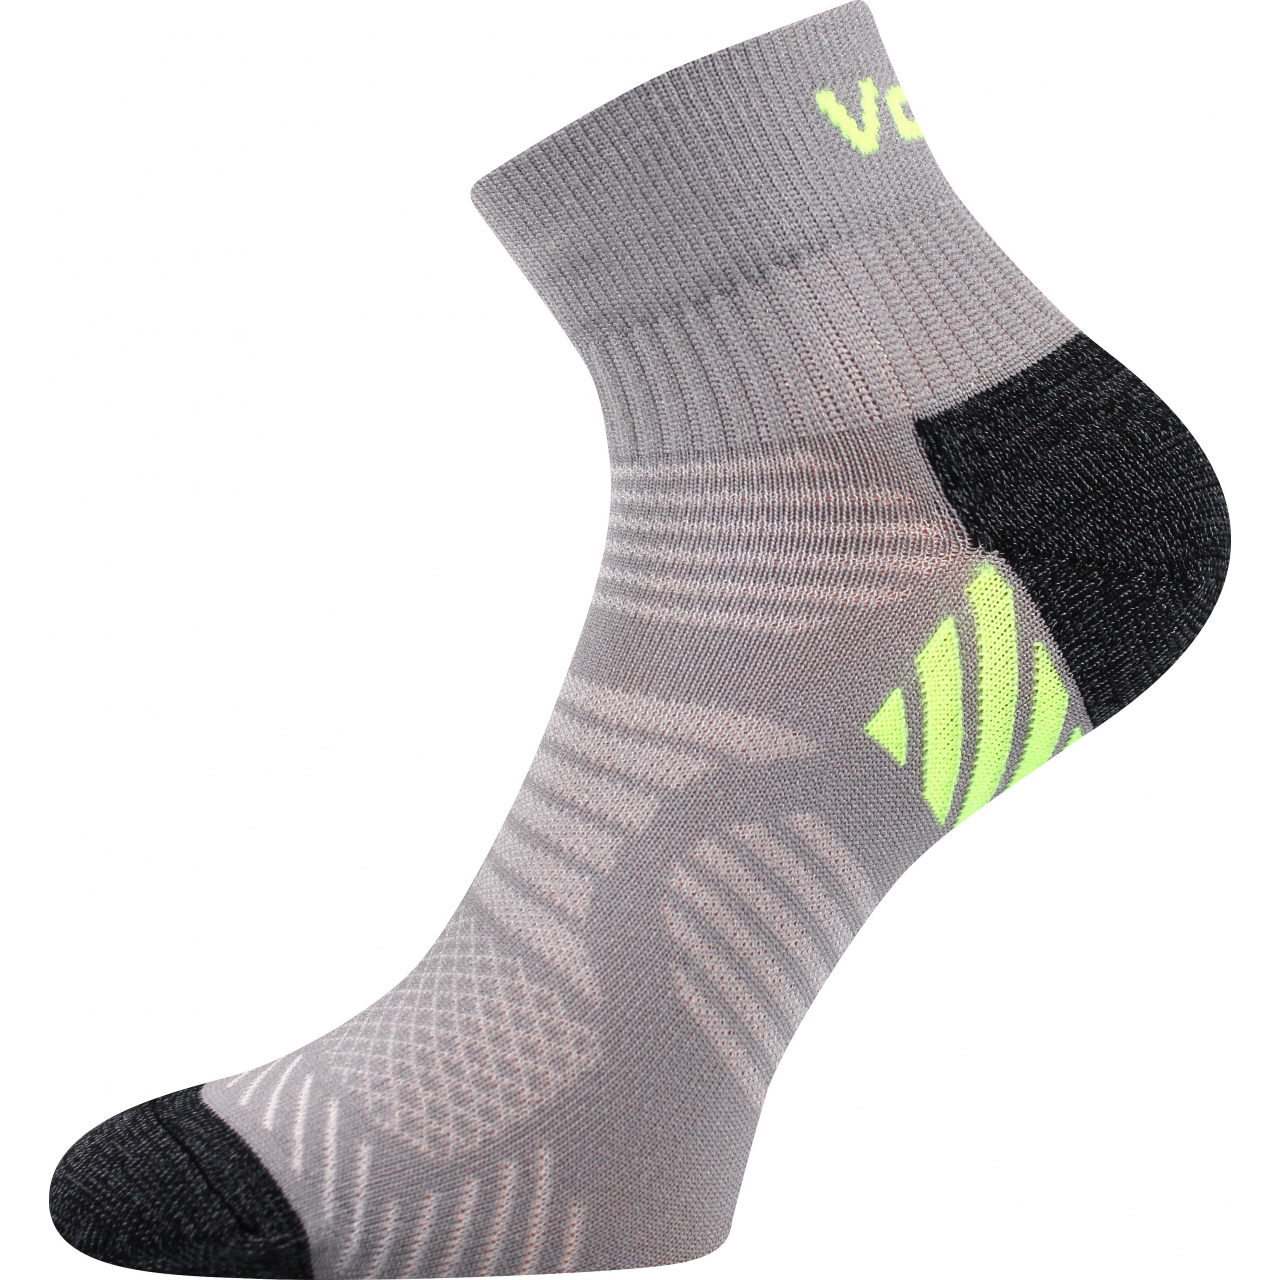 Ponožky unisex sportovní Voxx Raymond - šedé-zelené, 35-38